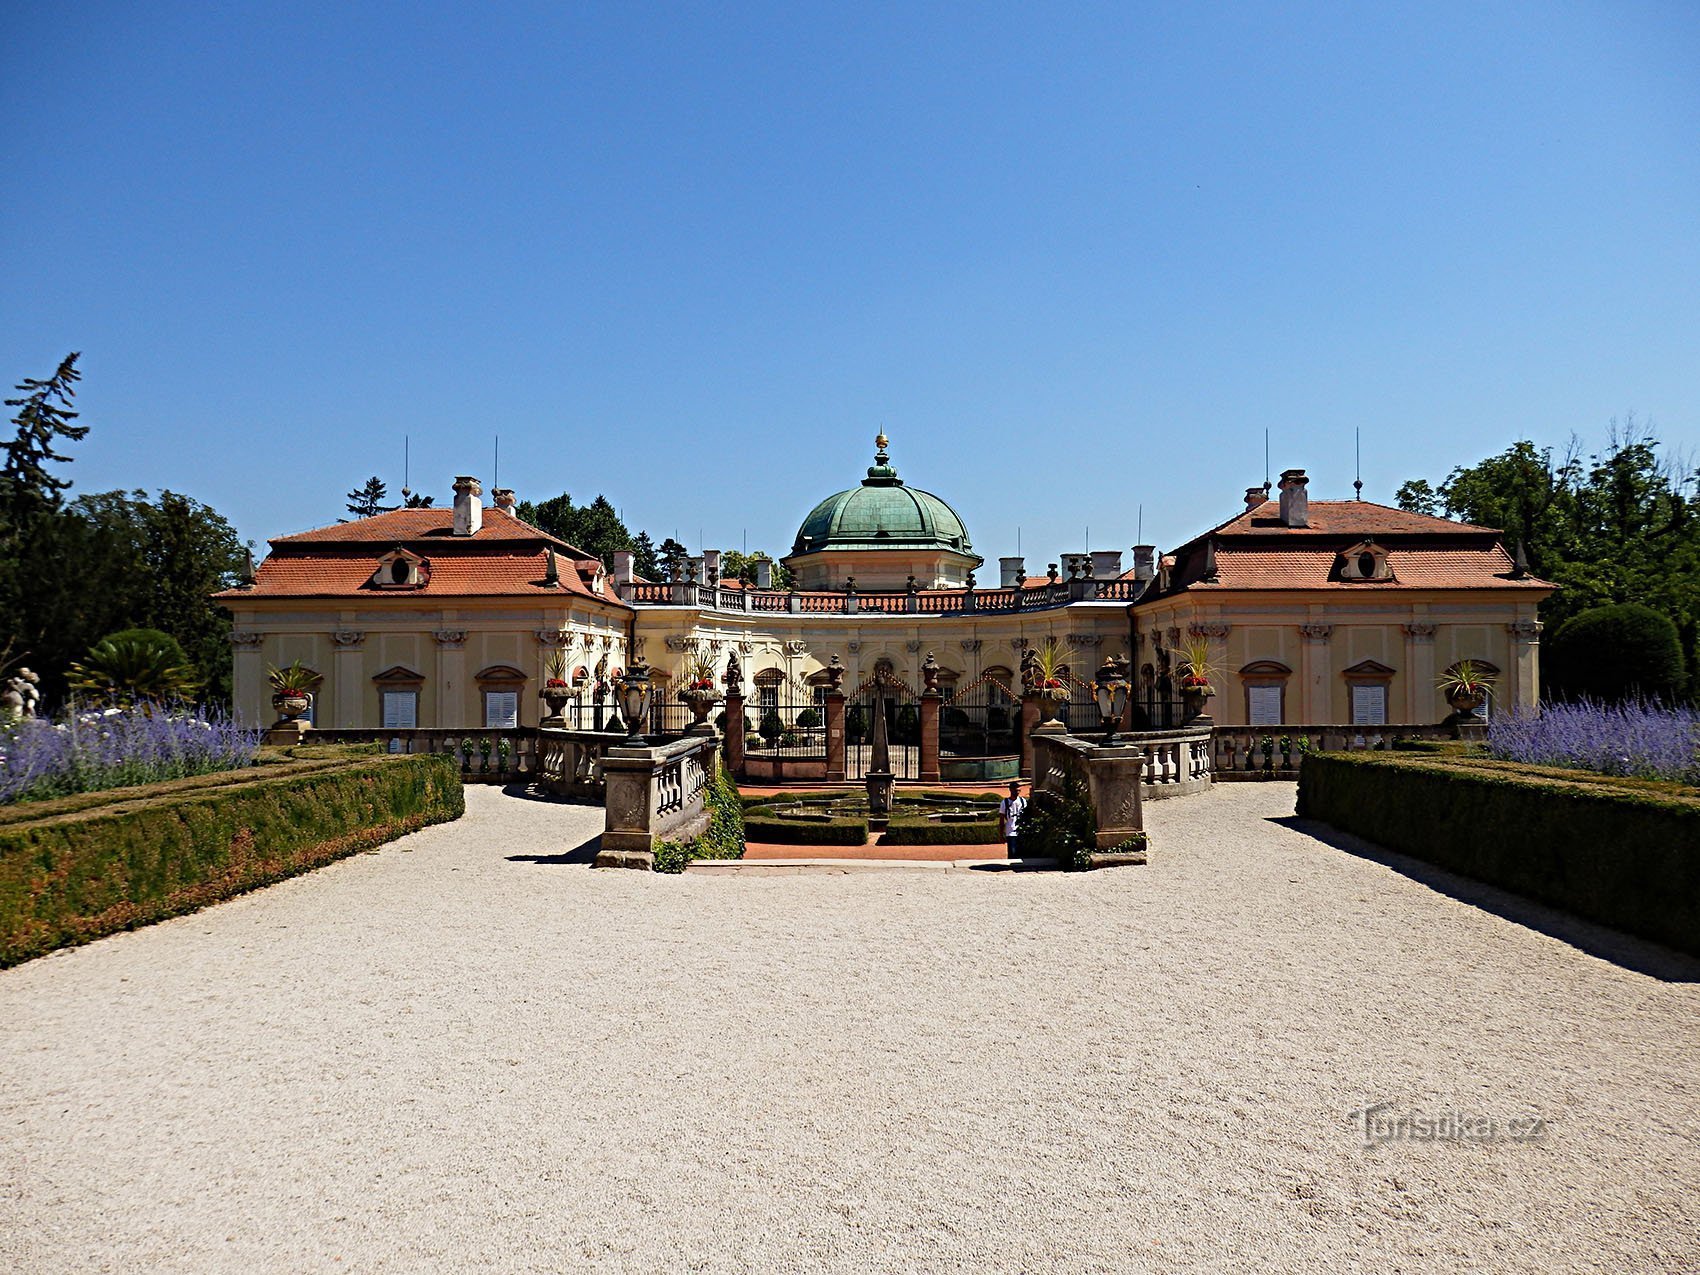 zámek Buchlovice – barokní klenot mezi šlechtickými sídly